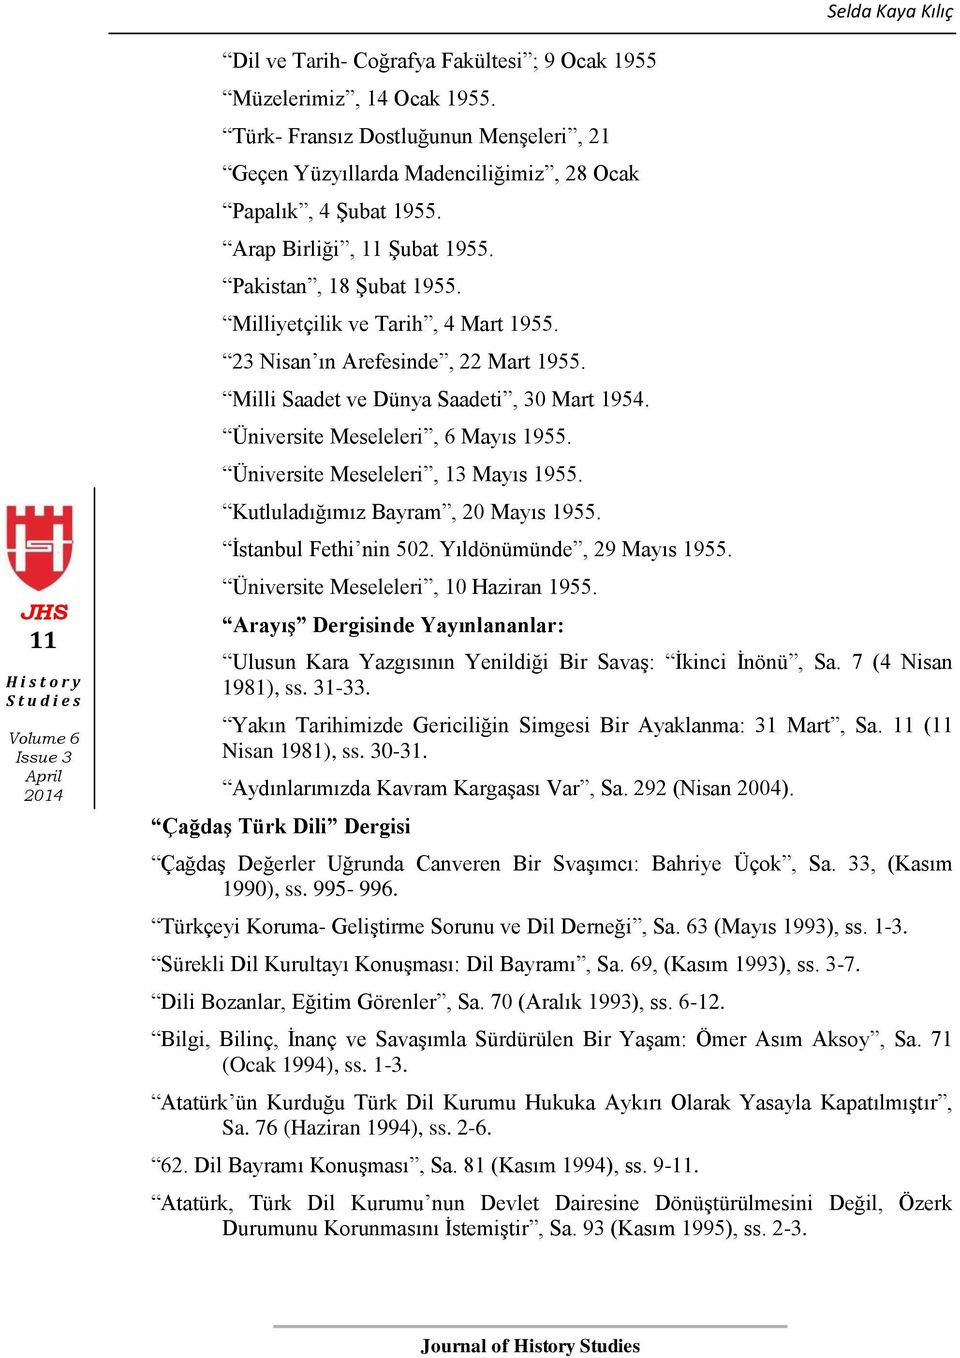 Üniversite Meseleleri, 6 Mayıs 1955. Üniversite Meseleleri, 13 Mayıs 1955. Kutluladığımız Bayram, 20 Mayıs 1955. İstanbul Fethi nin 502. Yıldönümünde, 29 Mayıs 1955.